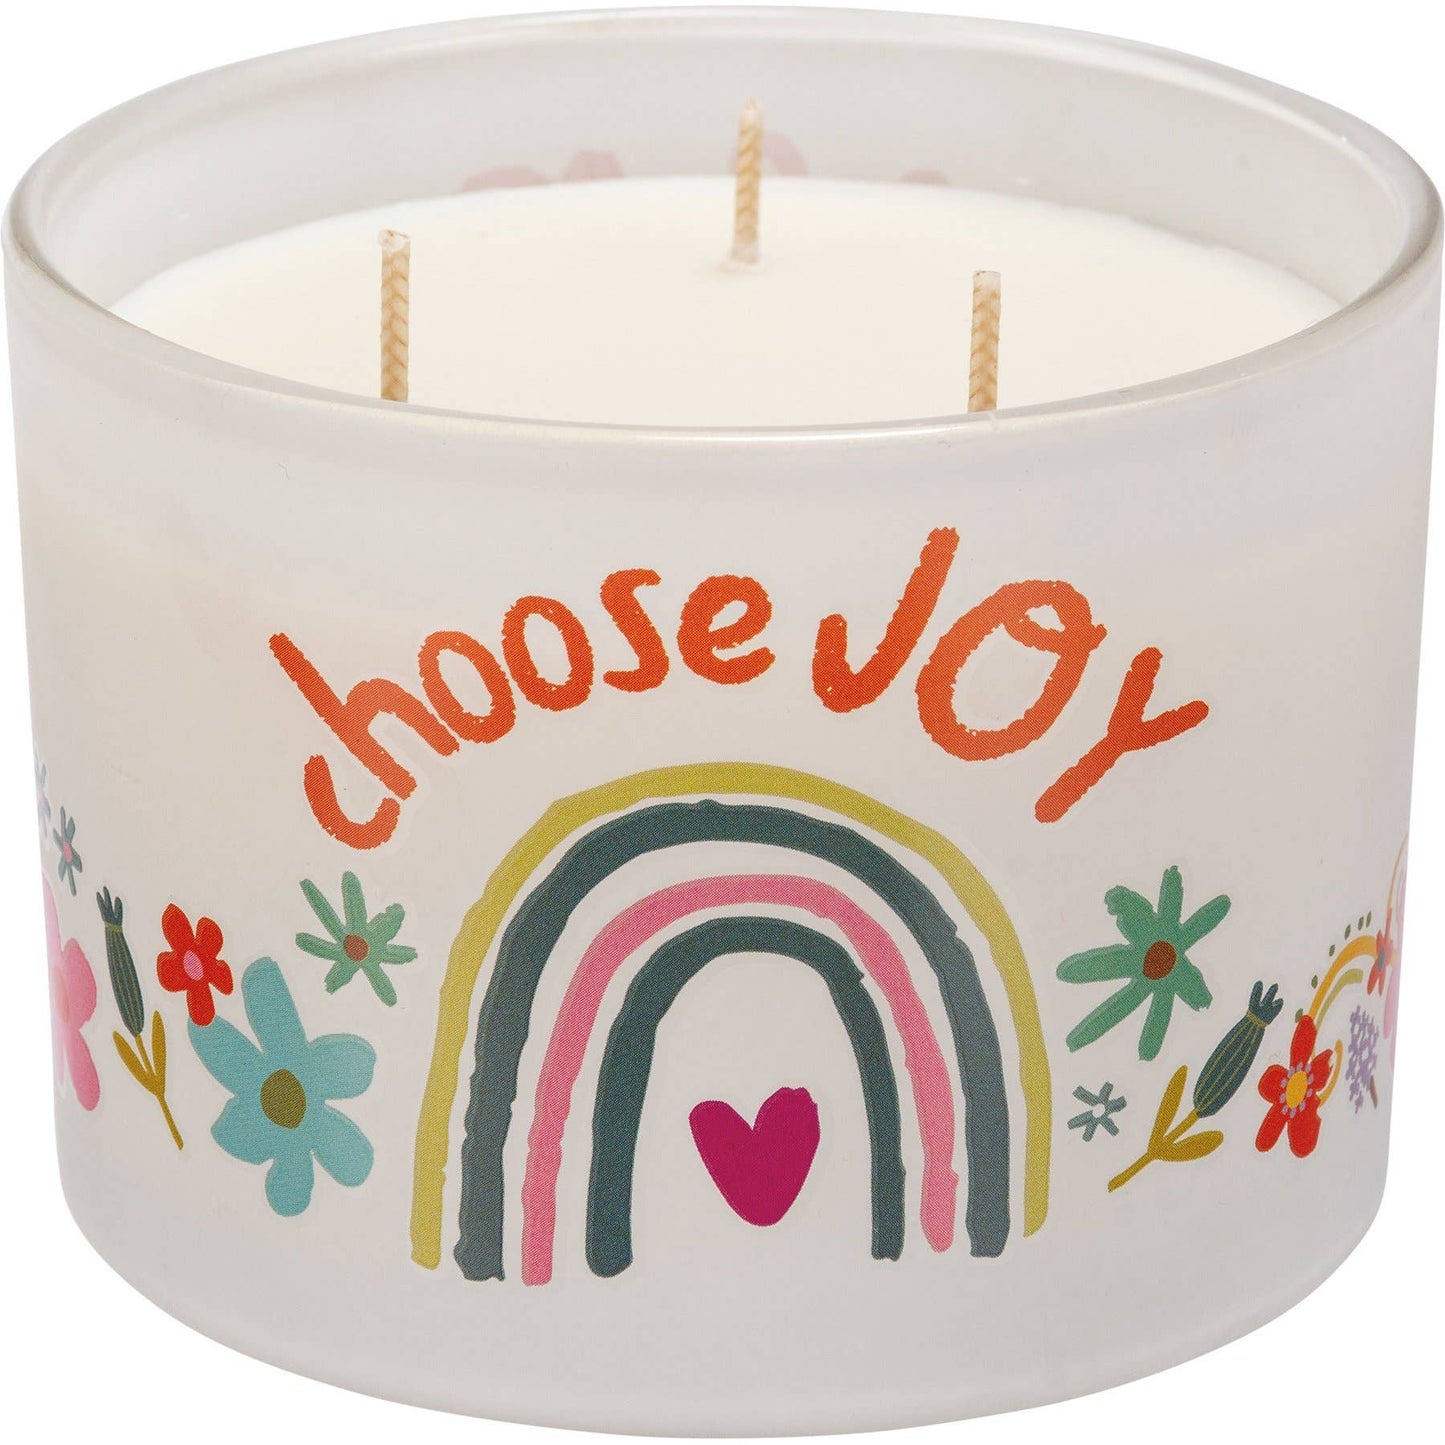 Choose Joy Candle